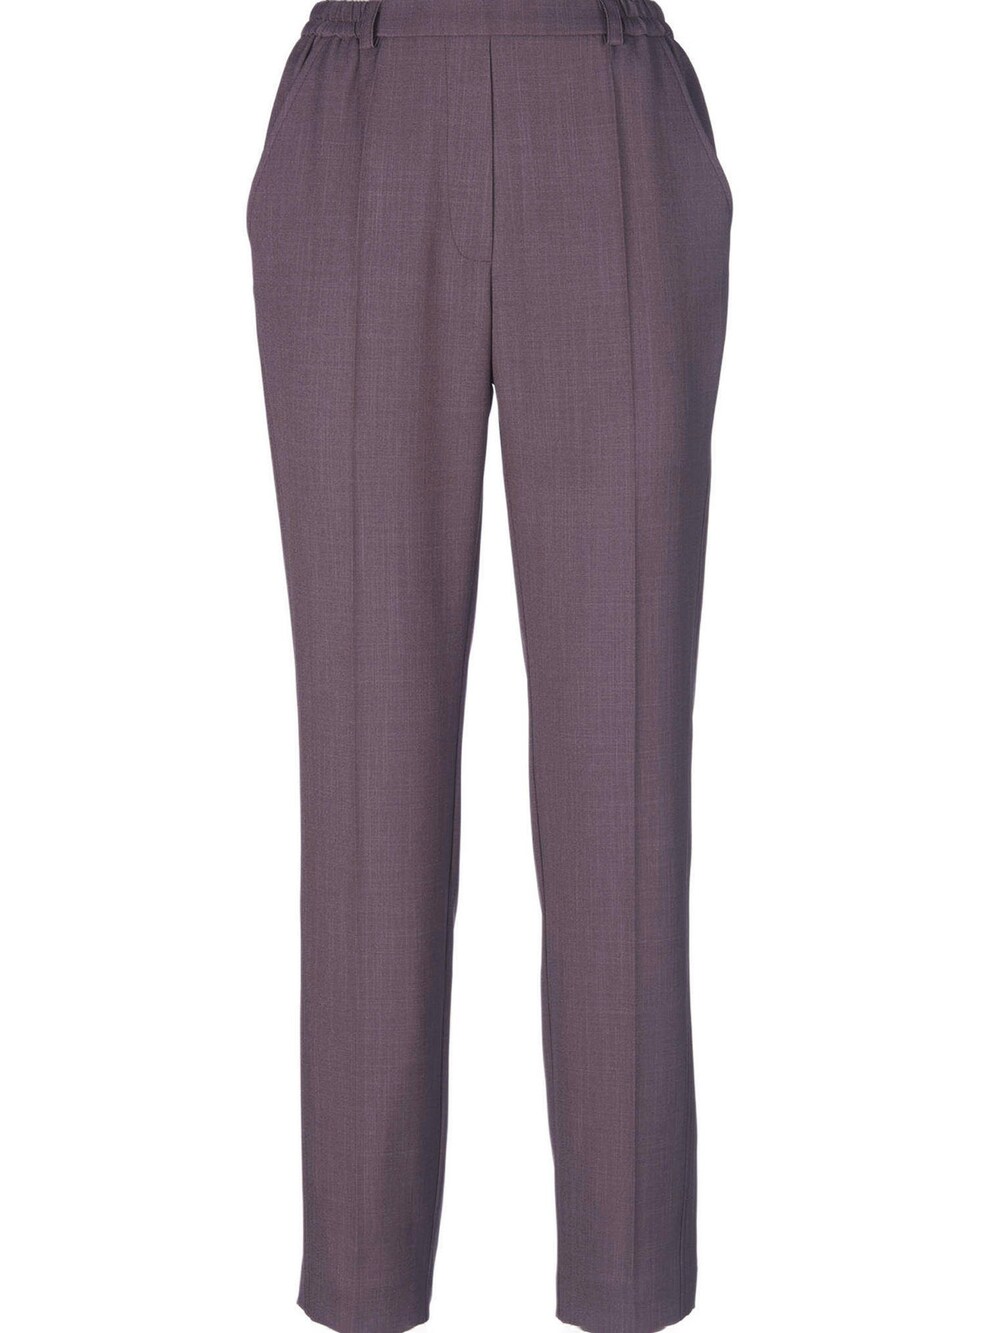 Обычные плиссированные брюки Goldner, фиолетовый обычные плиссированные брюки edited leona оливковый